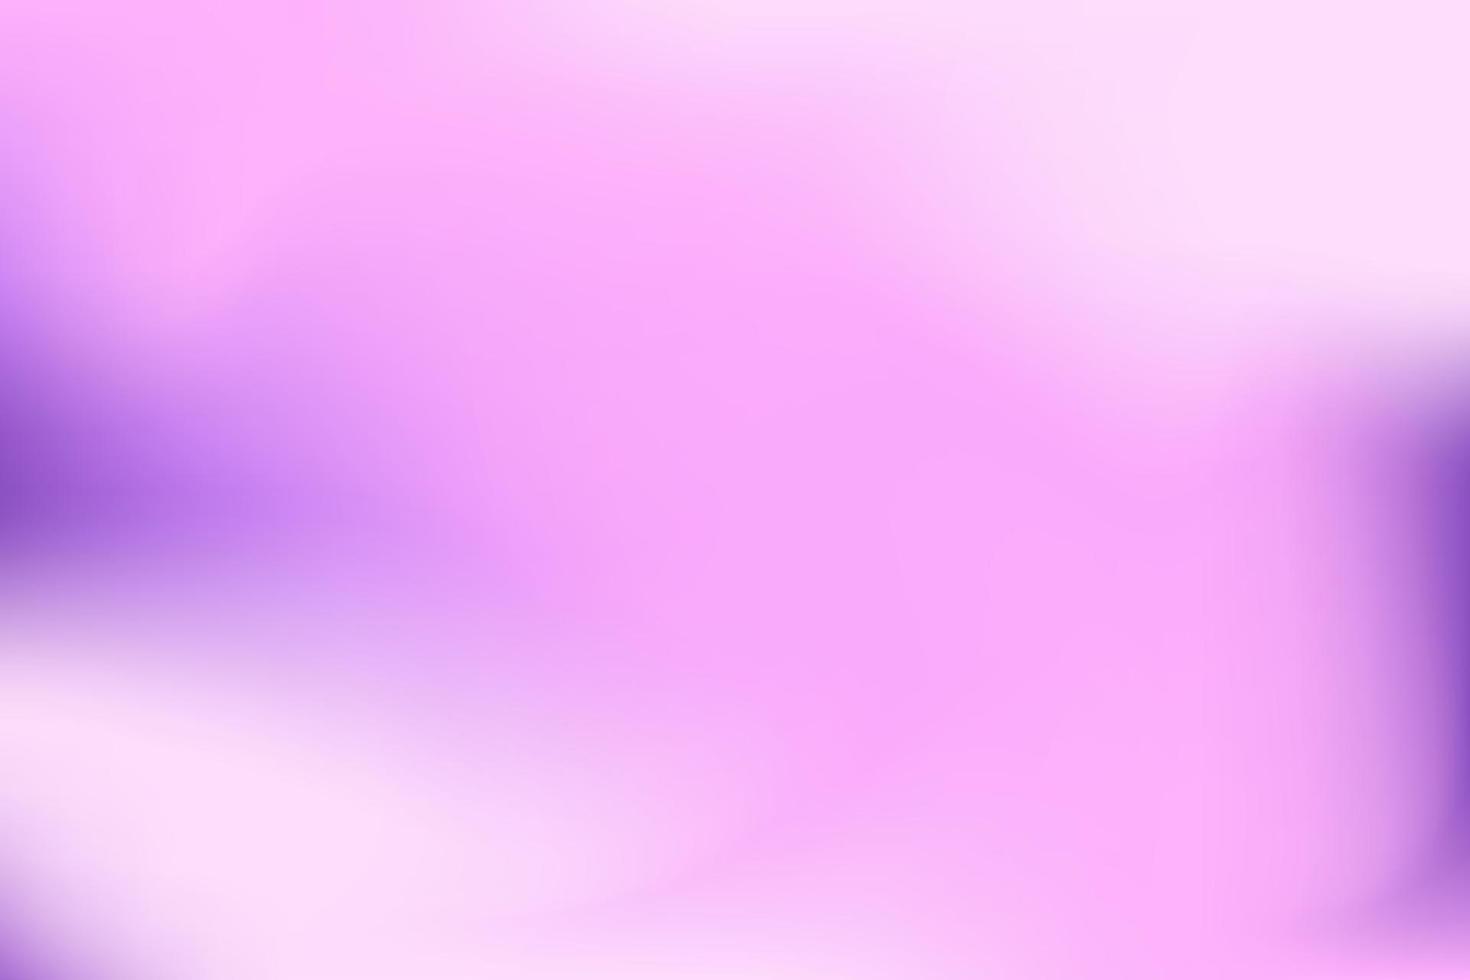 hermoso degradado rosa vectorial simple. fondo de color discreto. se puede utilizar para fondo web, banner, postal, collage. vector